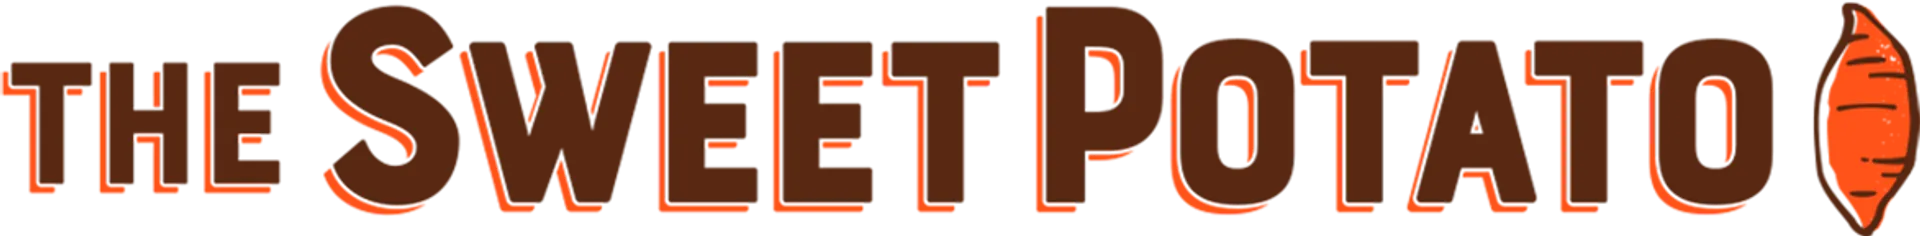 THE SWEET POTATO logo